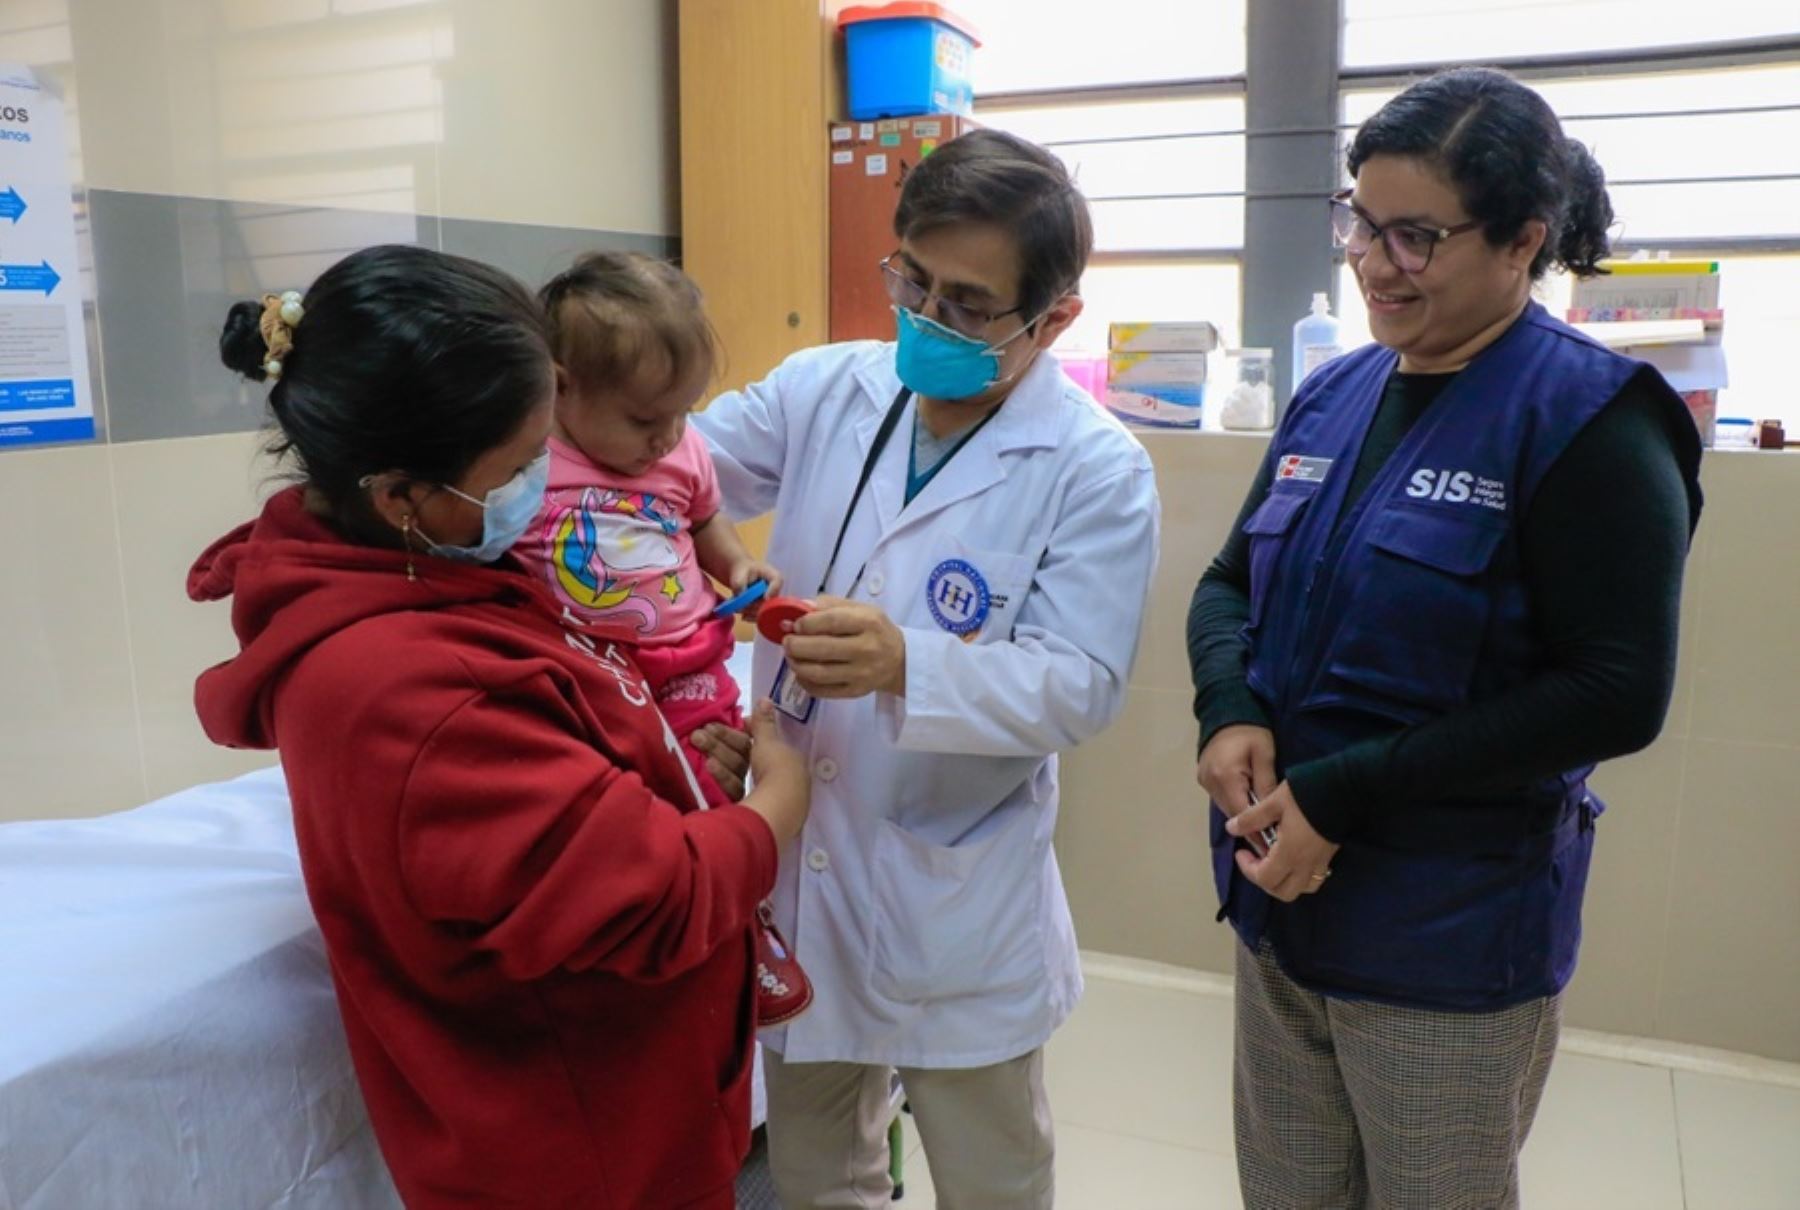 Más de S/ 105 millones transfirió el SIS a inicios de año a las regiones Ayacucho, Apurímac e Ica, para financiar las atenciones médicas de sus asegurados en los hospitales, institutos especializados y centro de salud públicos de los gobiernos regionales.